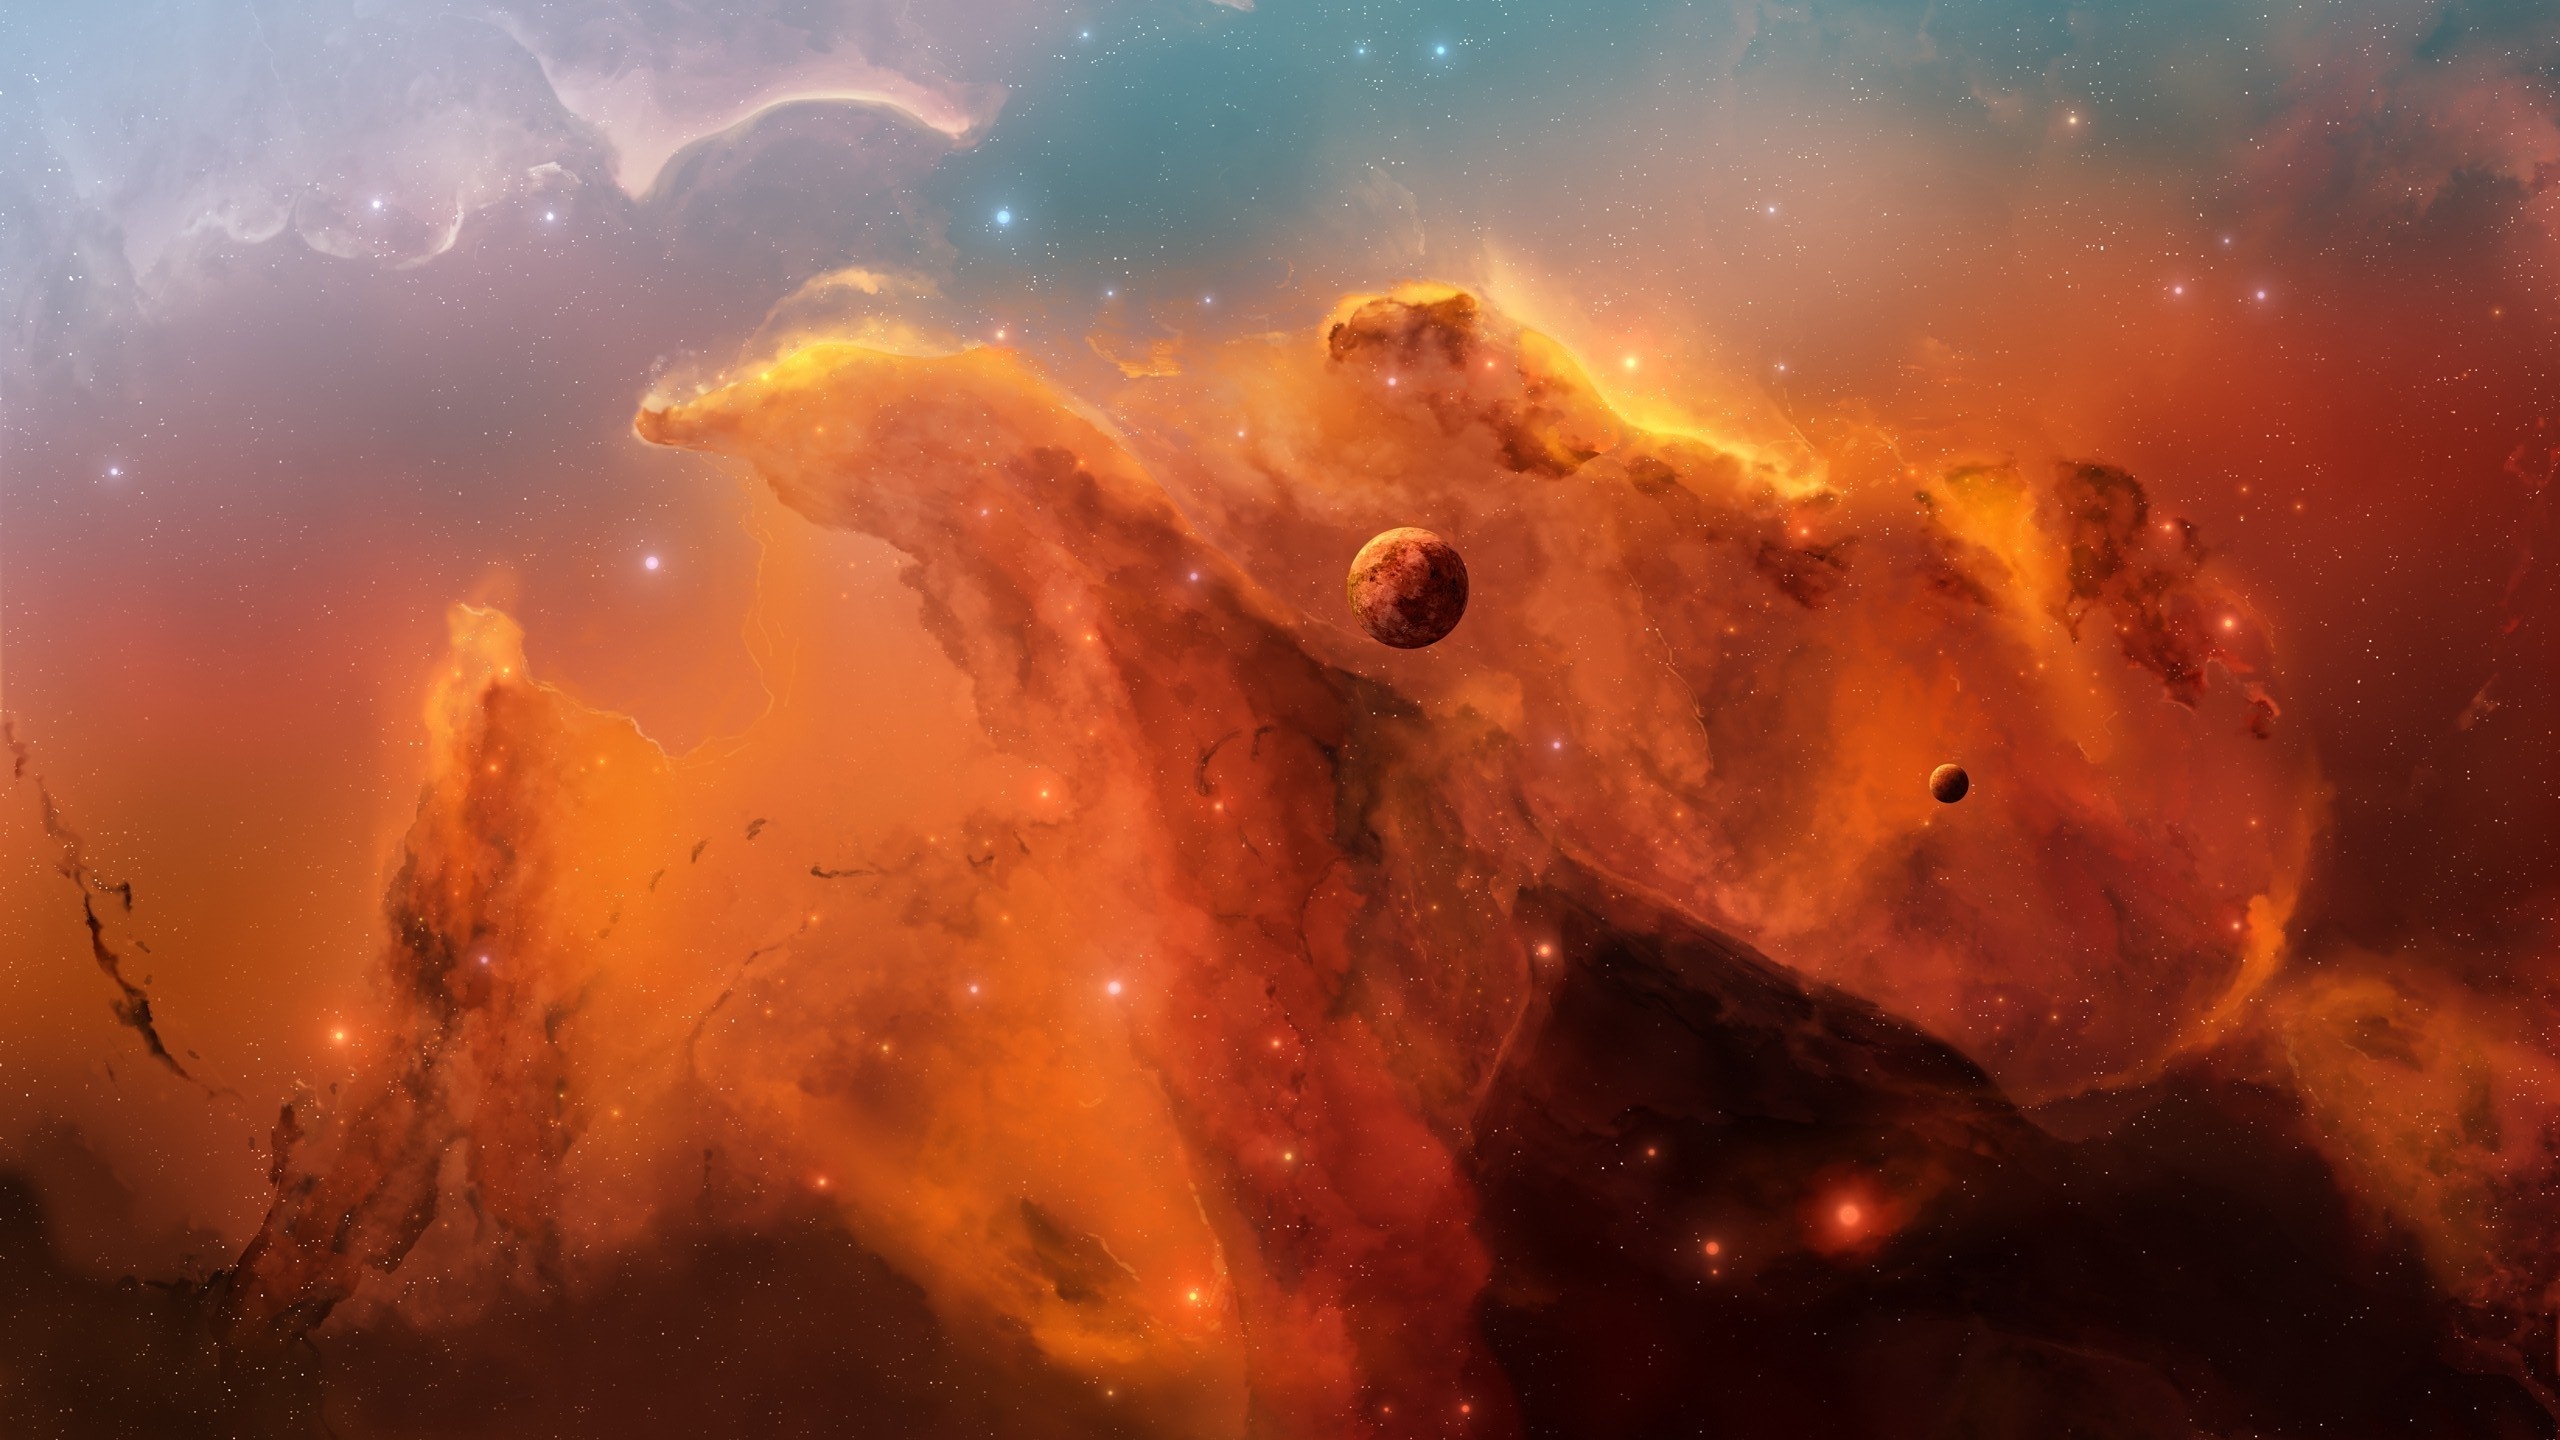 Nebula: Màn trình diễn tuyệt vời của sự tạo hóa và sức mạnh vô hạn của vũ trụ. Hãy xem hình ảnh Nebula để khám phá những vùng không gian đầy bí ẩn này.